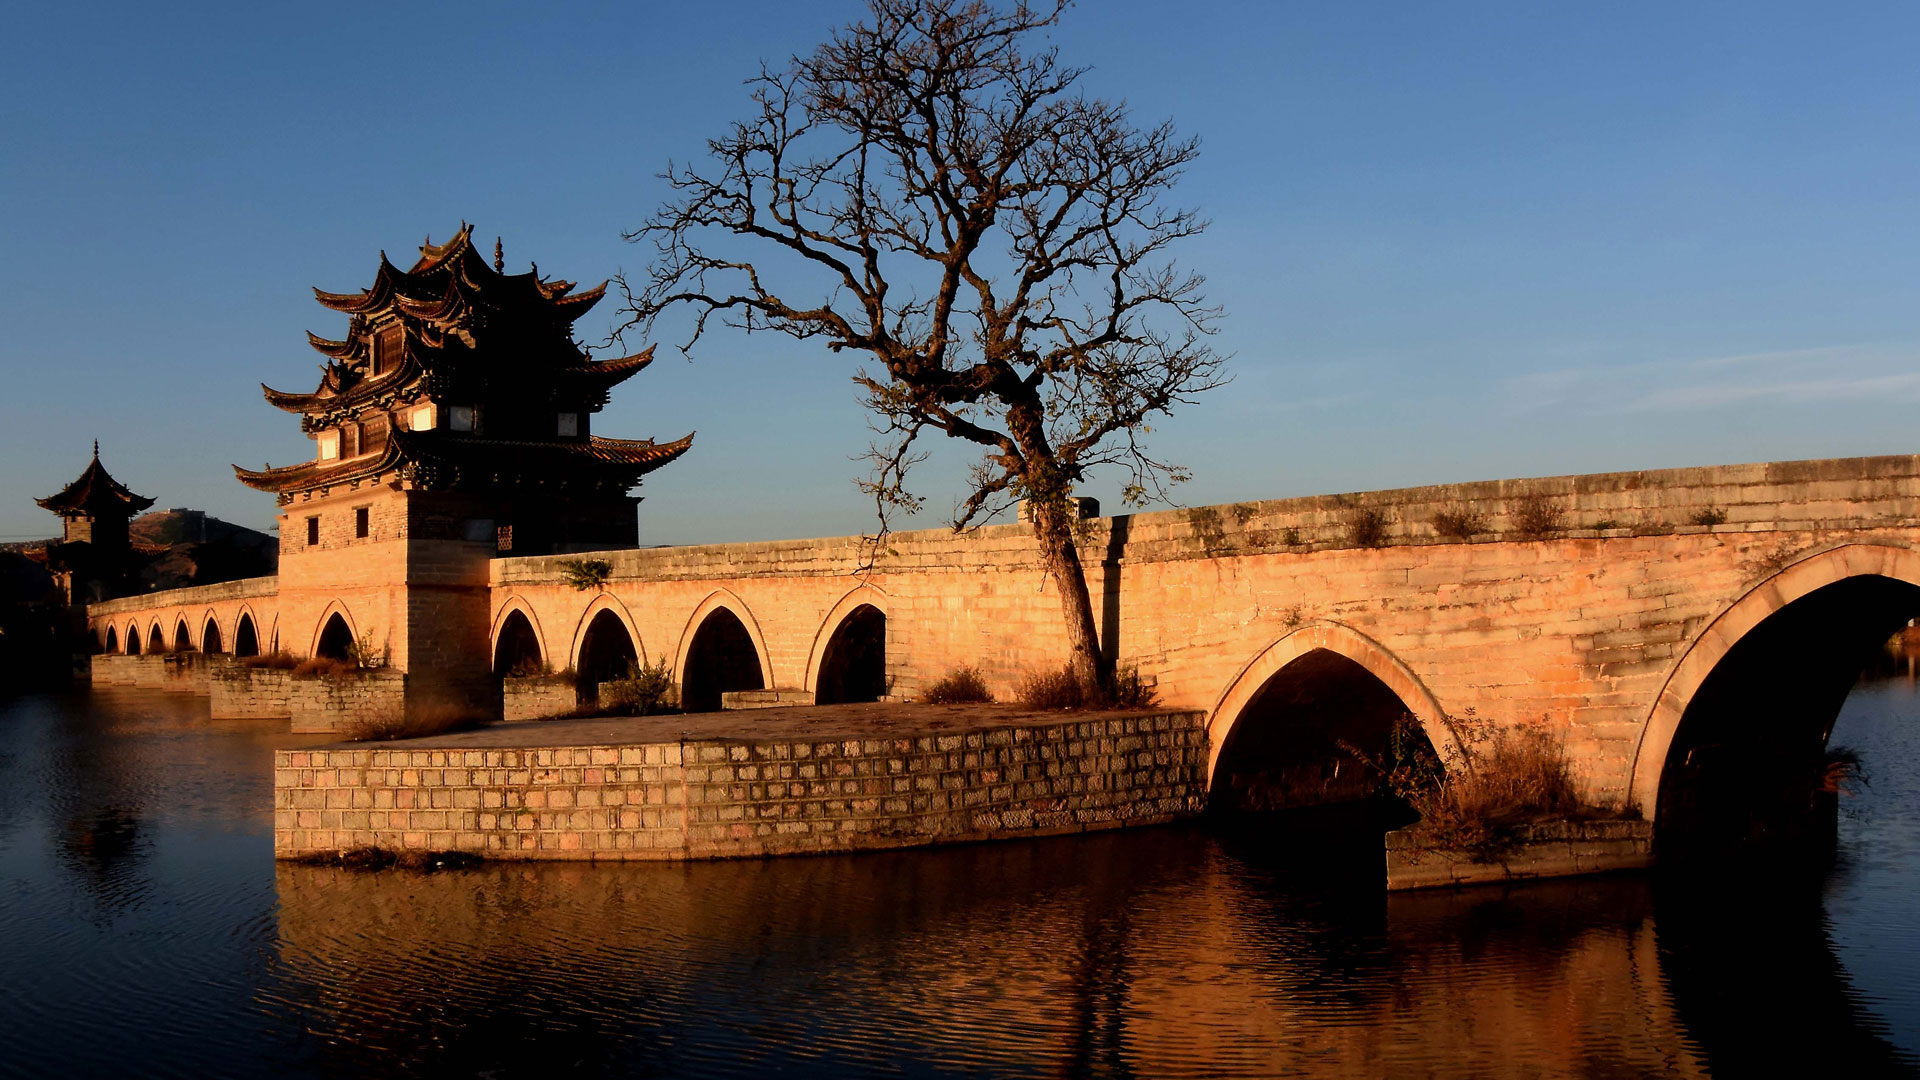 欣赏中国古桥之美:每一座都有故事_频道_凤凰网